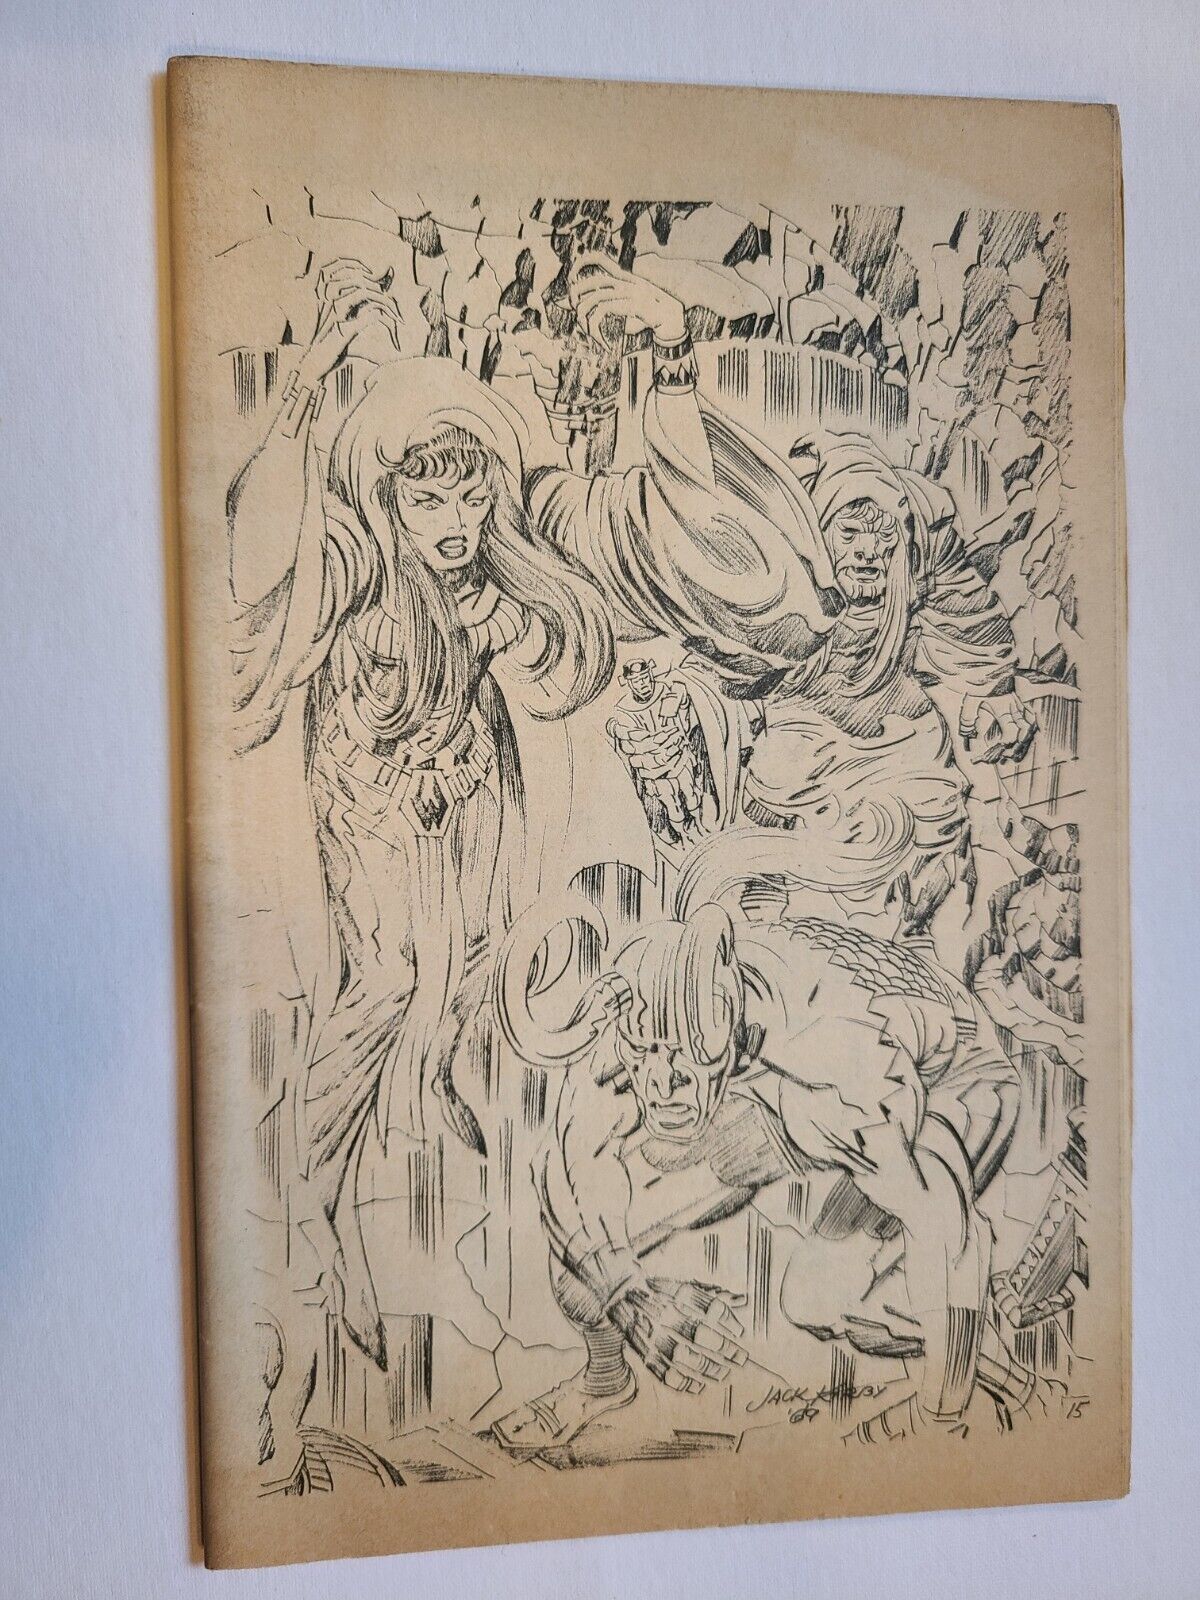 1969 DETROIT TRIPLE FAN FAIR CONVENTION PROGRAM KIRBY COVER WILLIAMSON ART RARE